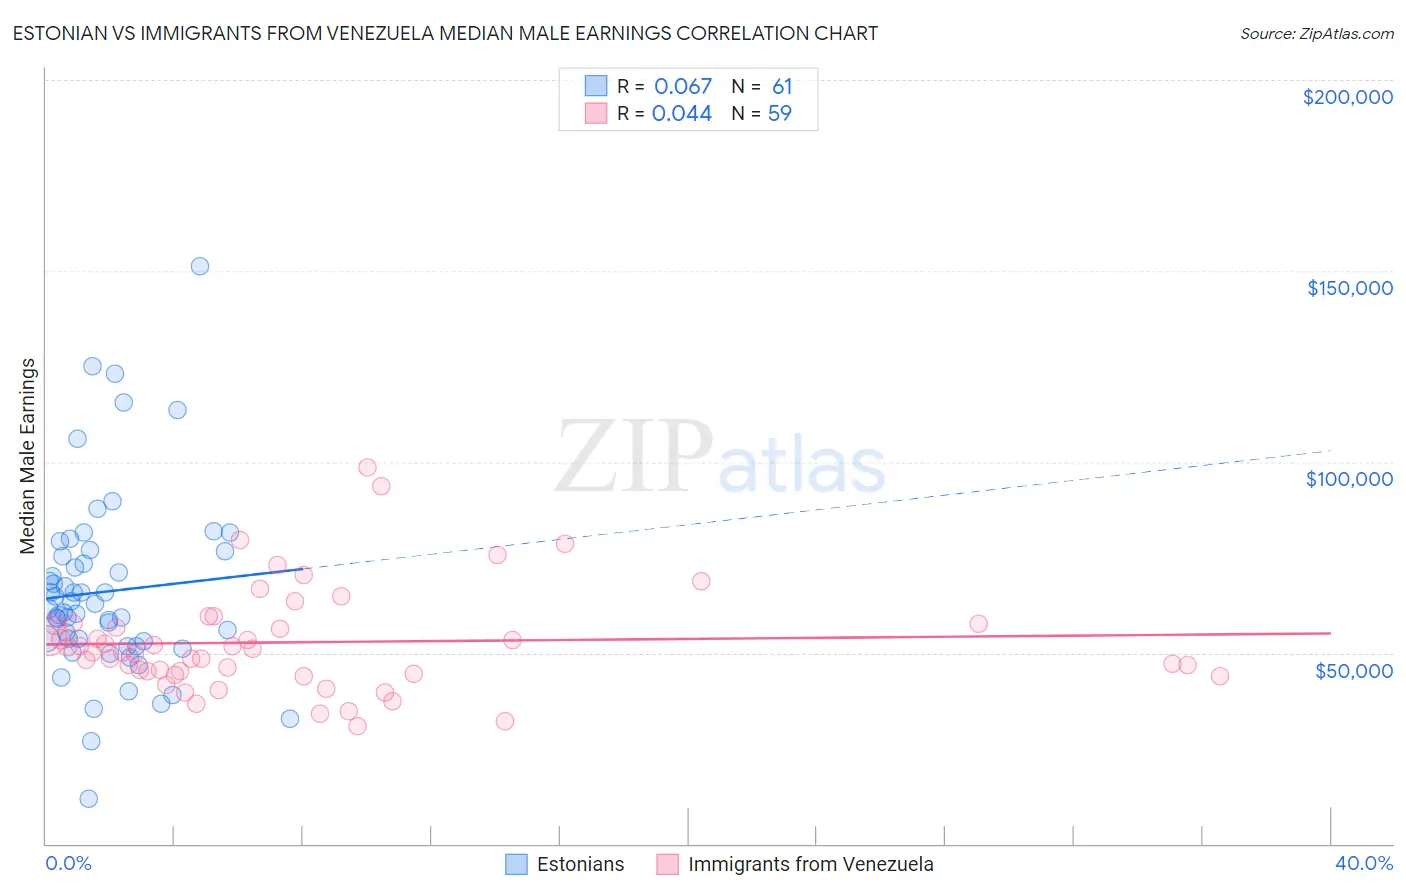 Estonian vs Immigrants from Venezuela Median Male Earnings